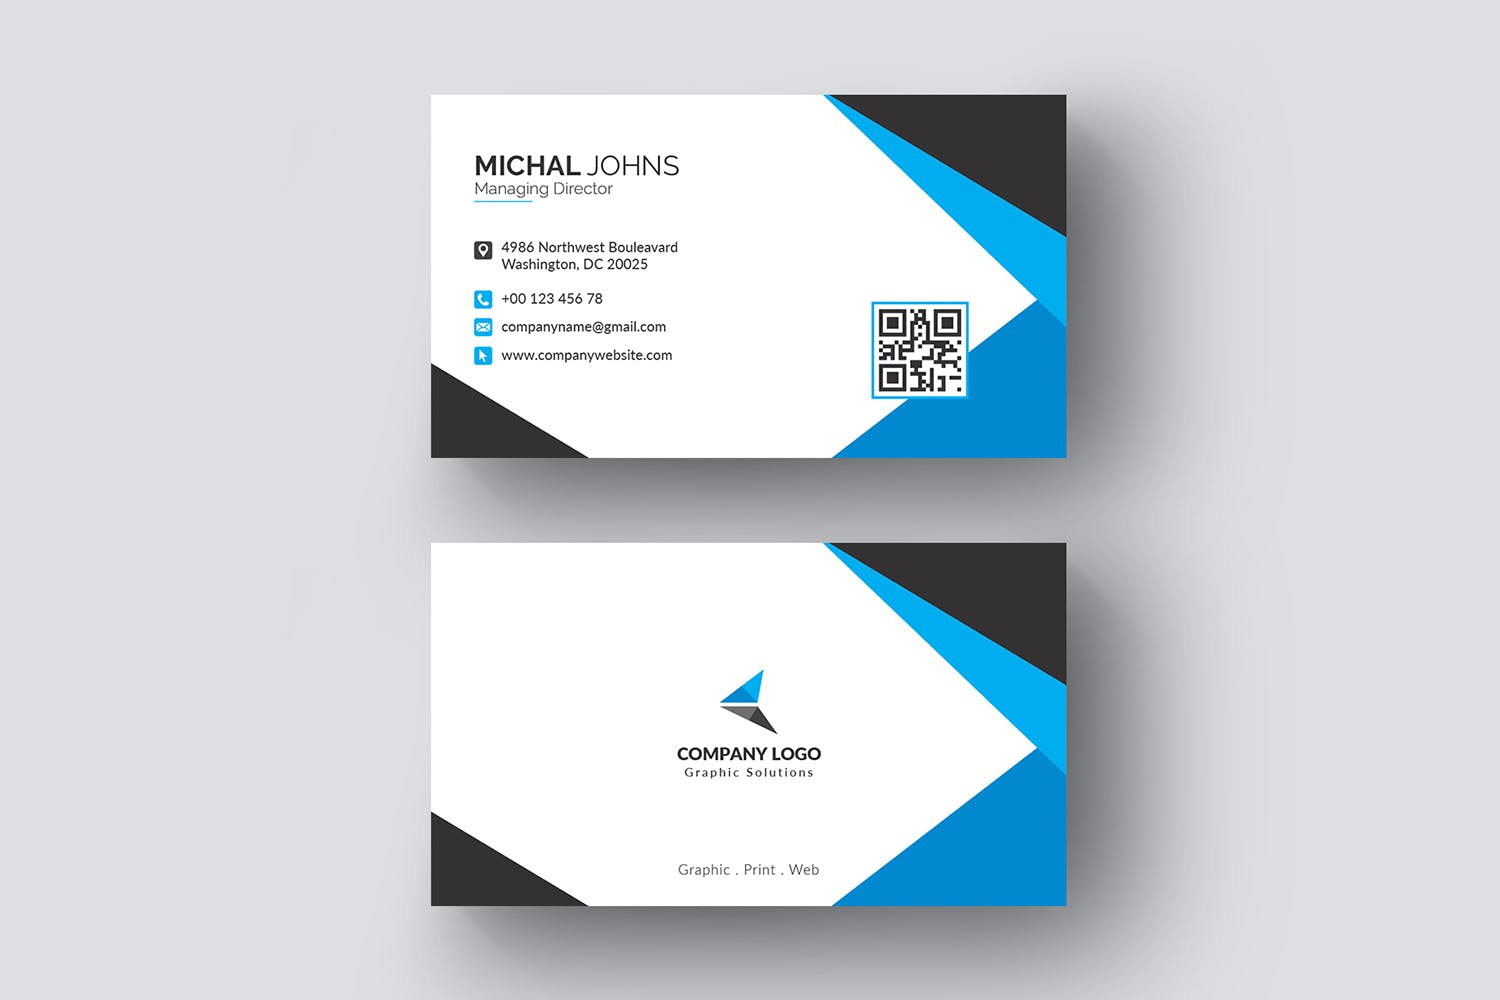 现代创意设计风格企业名片模板 Business Card插图1